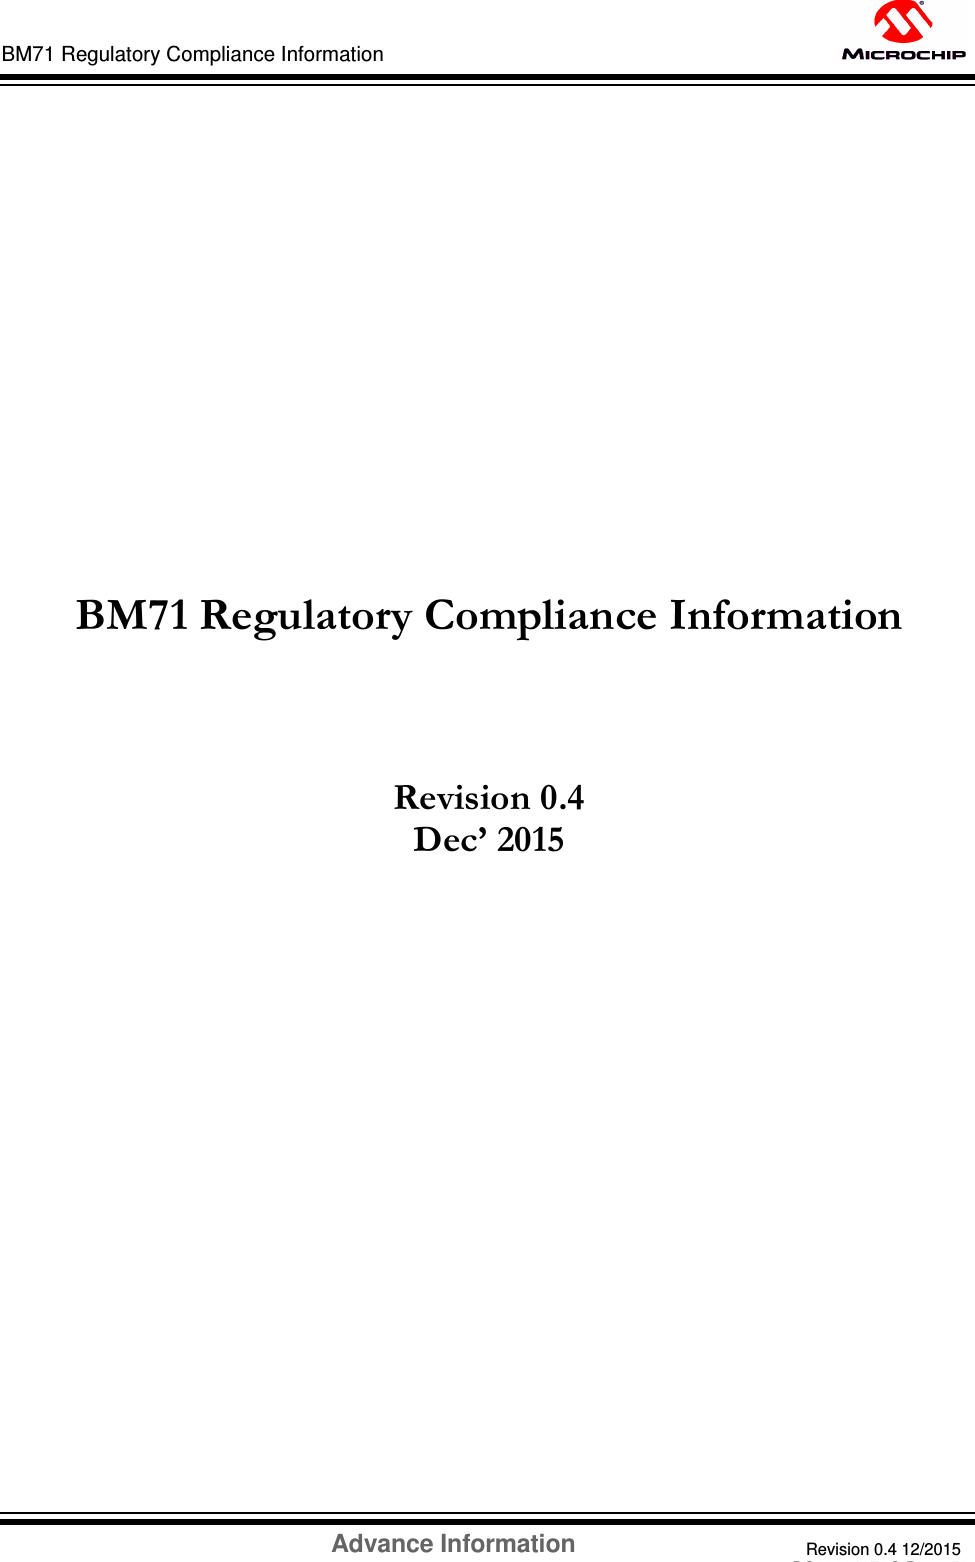 Advance Information Revision 0.4 12/2015 DS60001372C-Page 53 BM71 Regulatory Compliance Information                             BM71 Regulatory Compliance Information    Revision 0.4 Dec’ 2015                                  